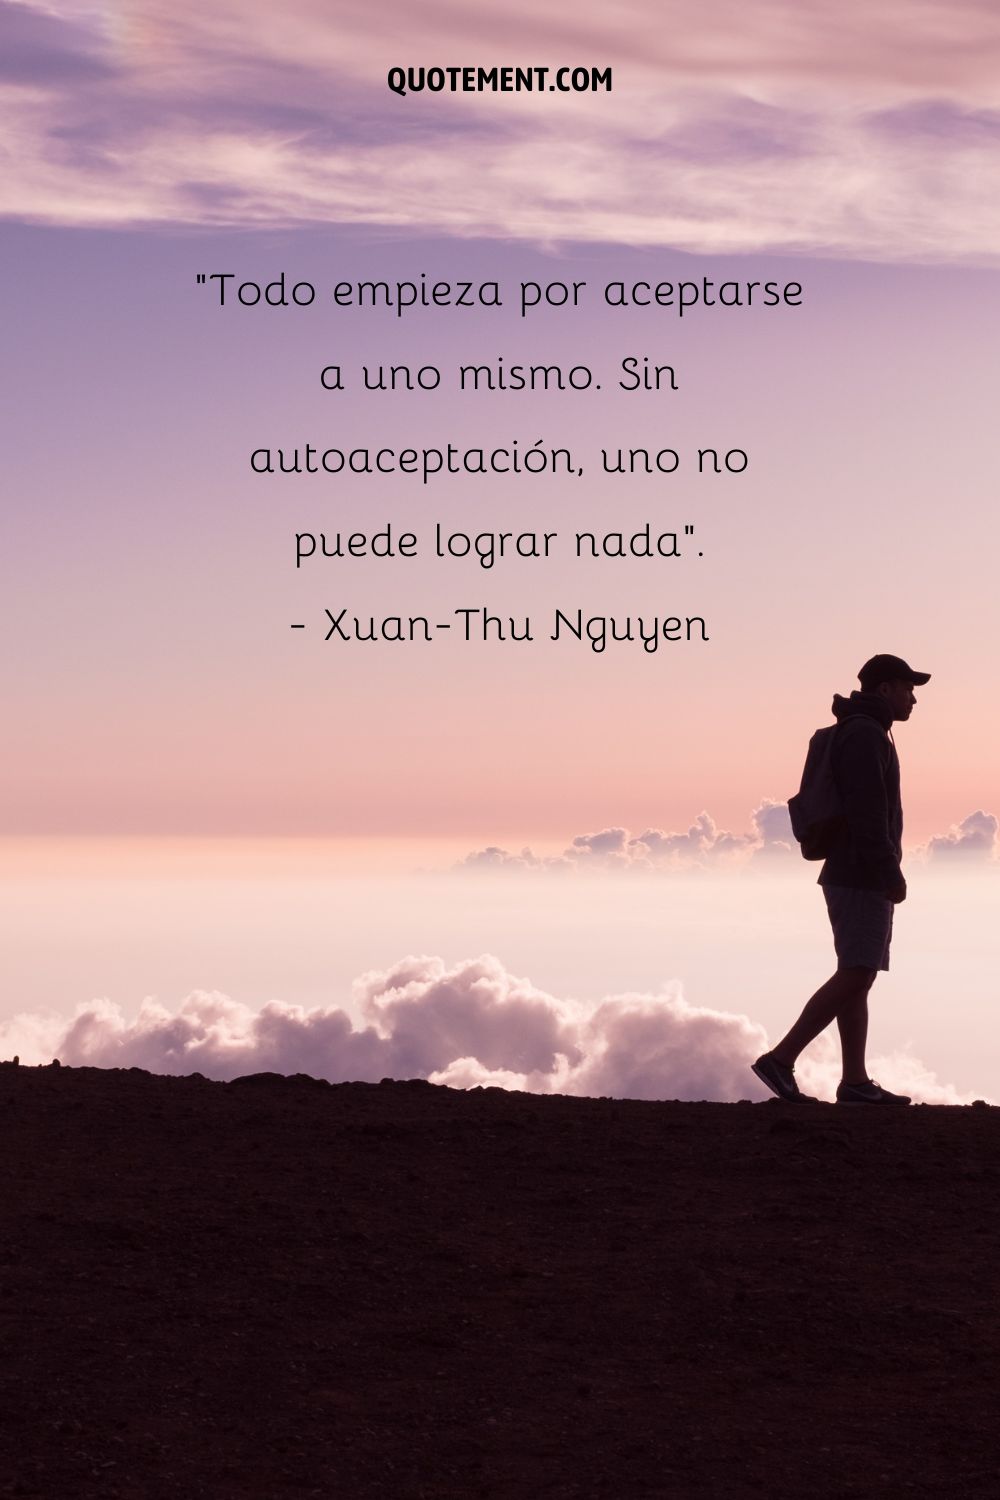 "Todo empieza por aceptarse a uno mismo. Sin aceptación de uno mismo, no se puede lograr nada". - Xuan-Thu Nguyen